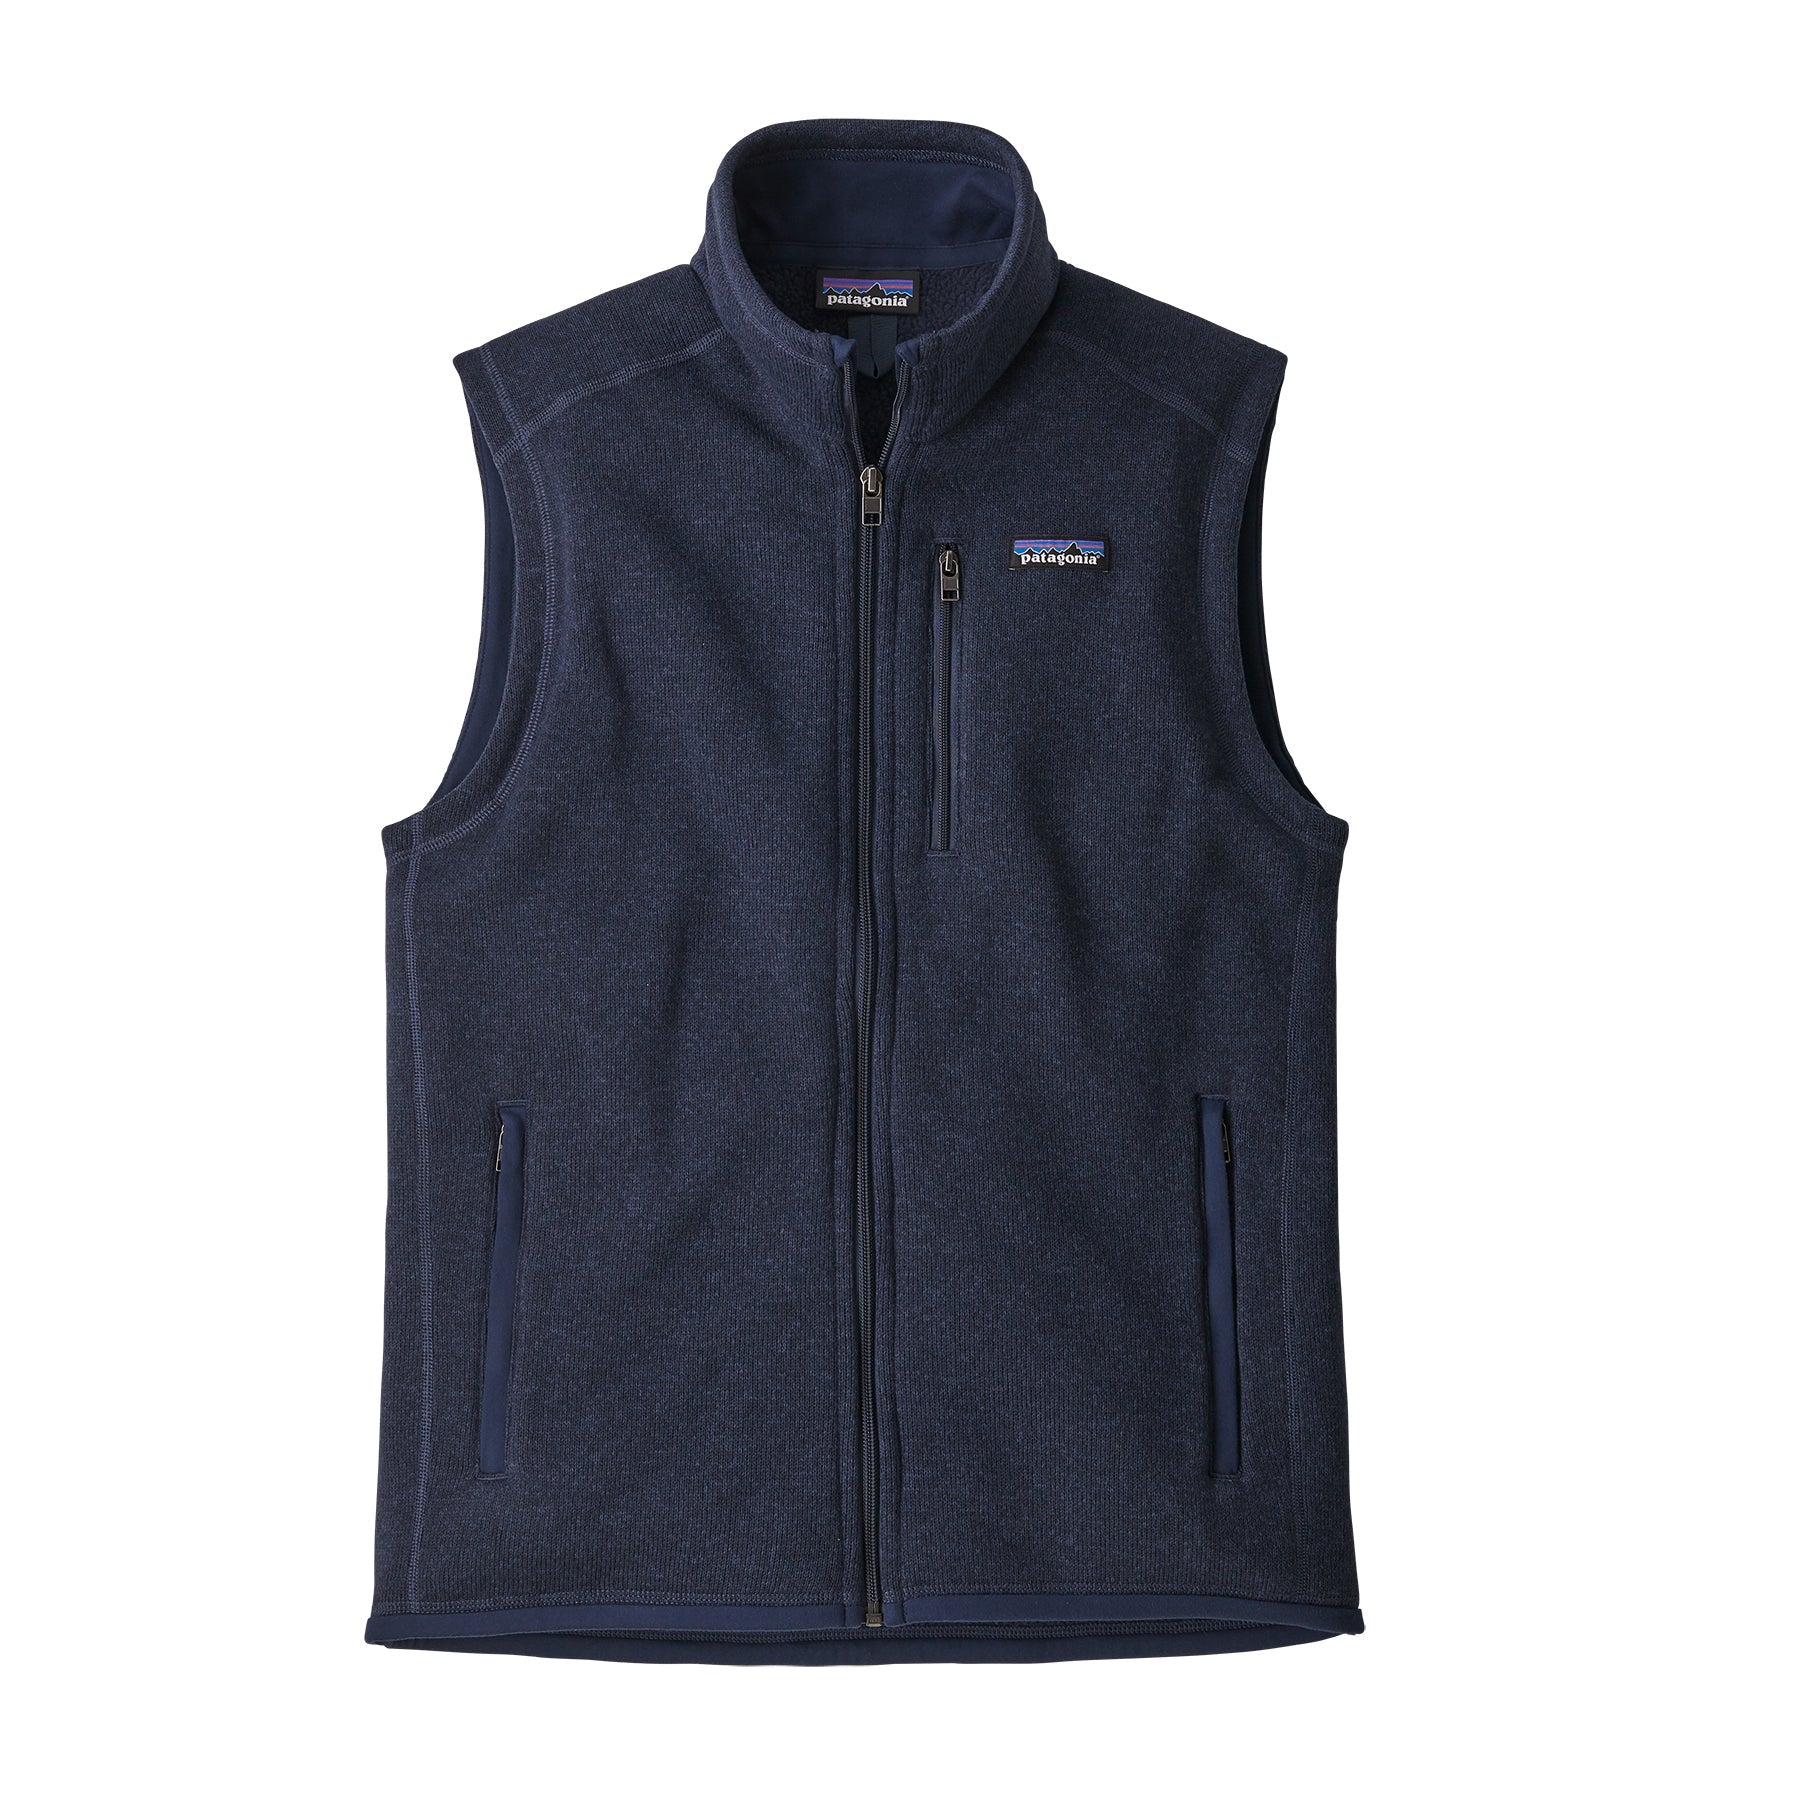 Patagonia Men's Better Sweater® Fleece Jacket - New Navy